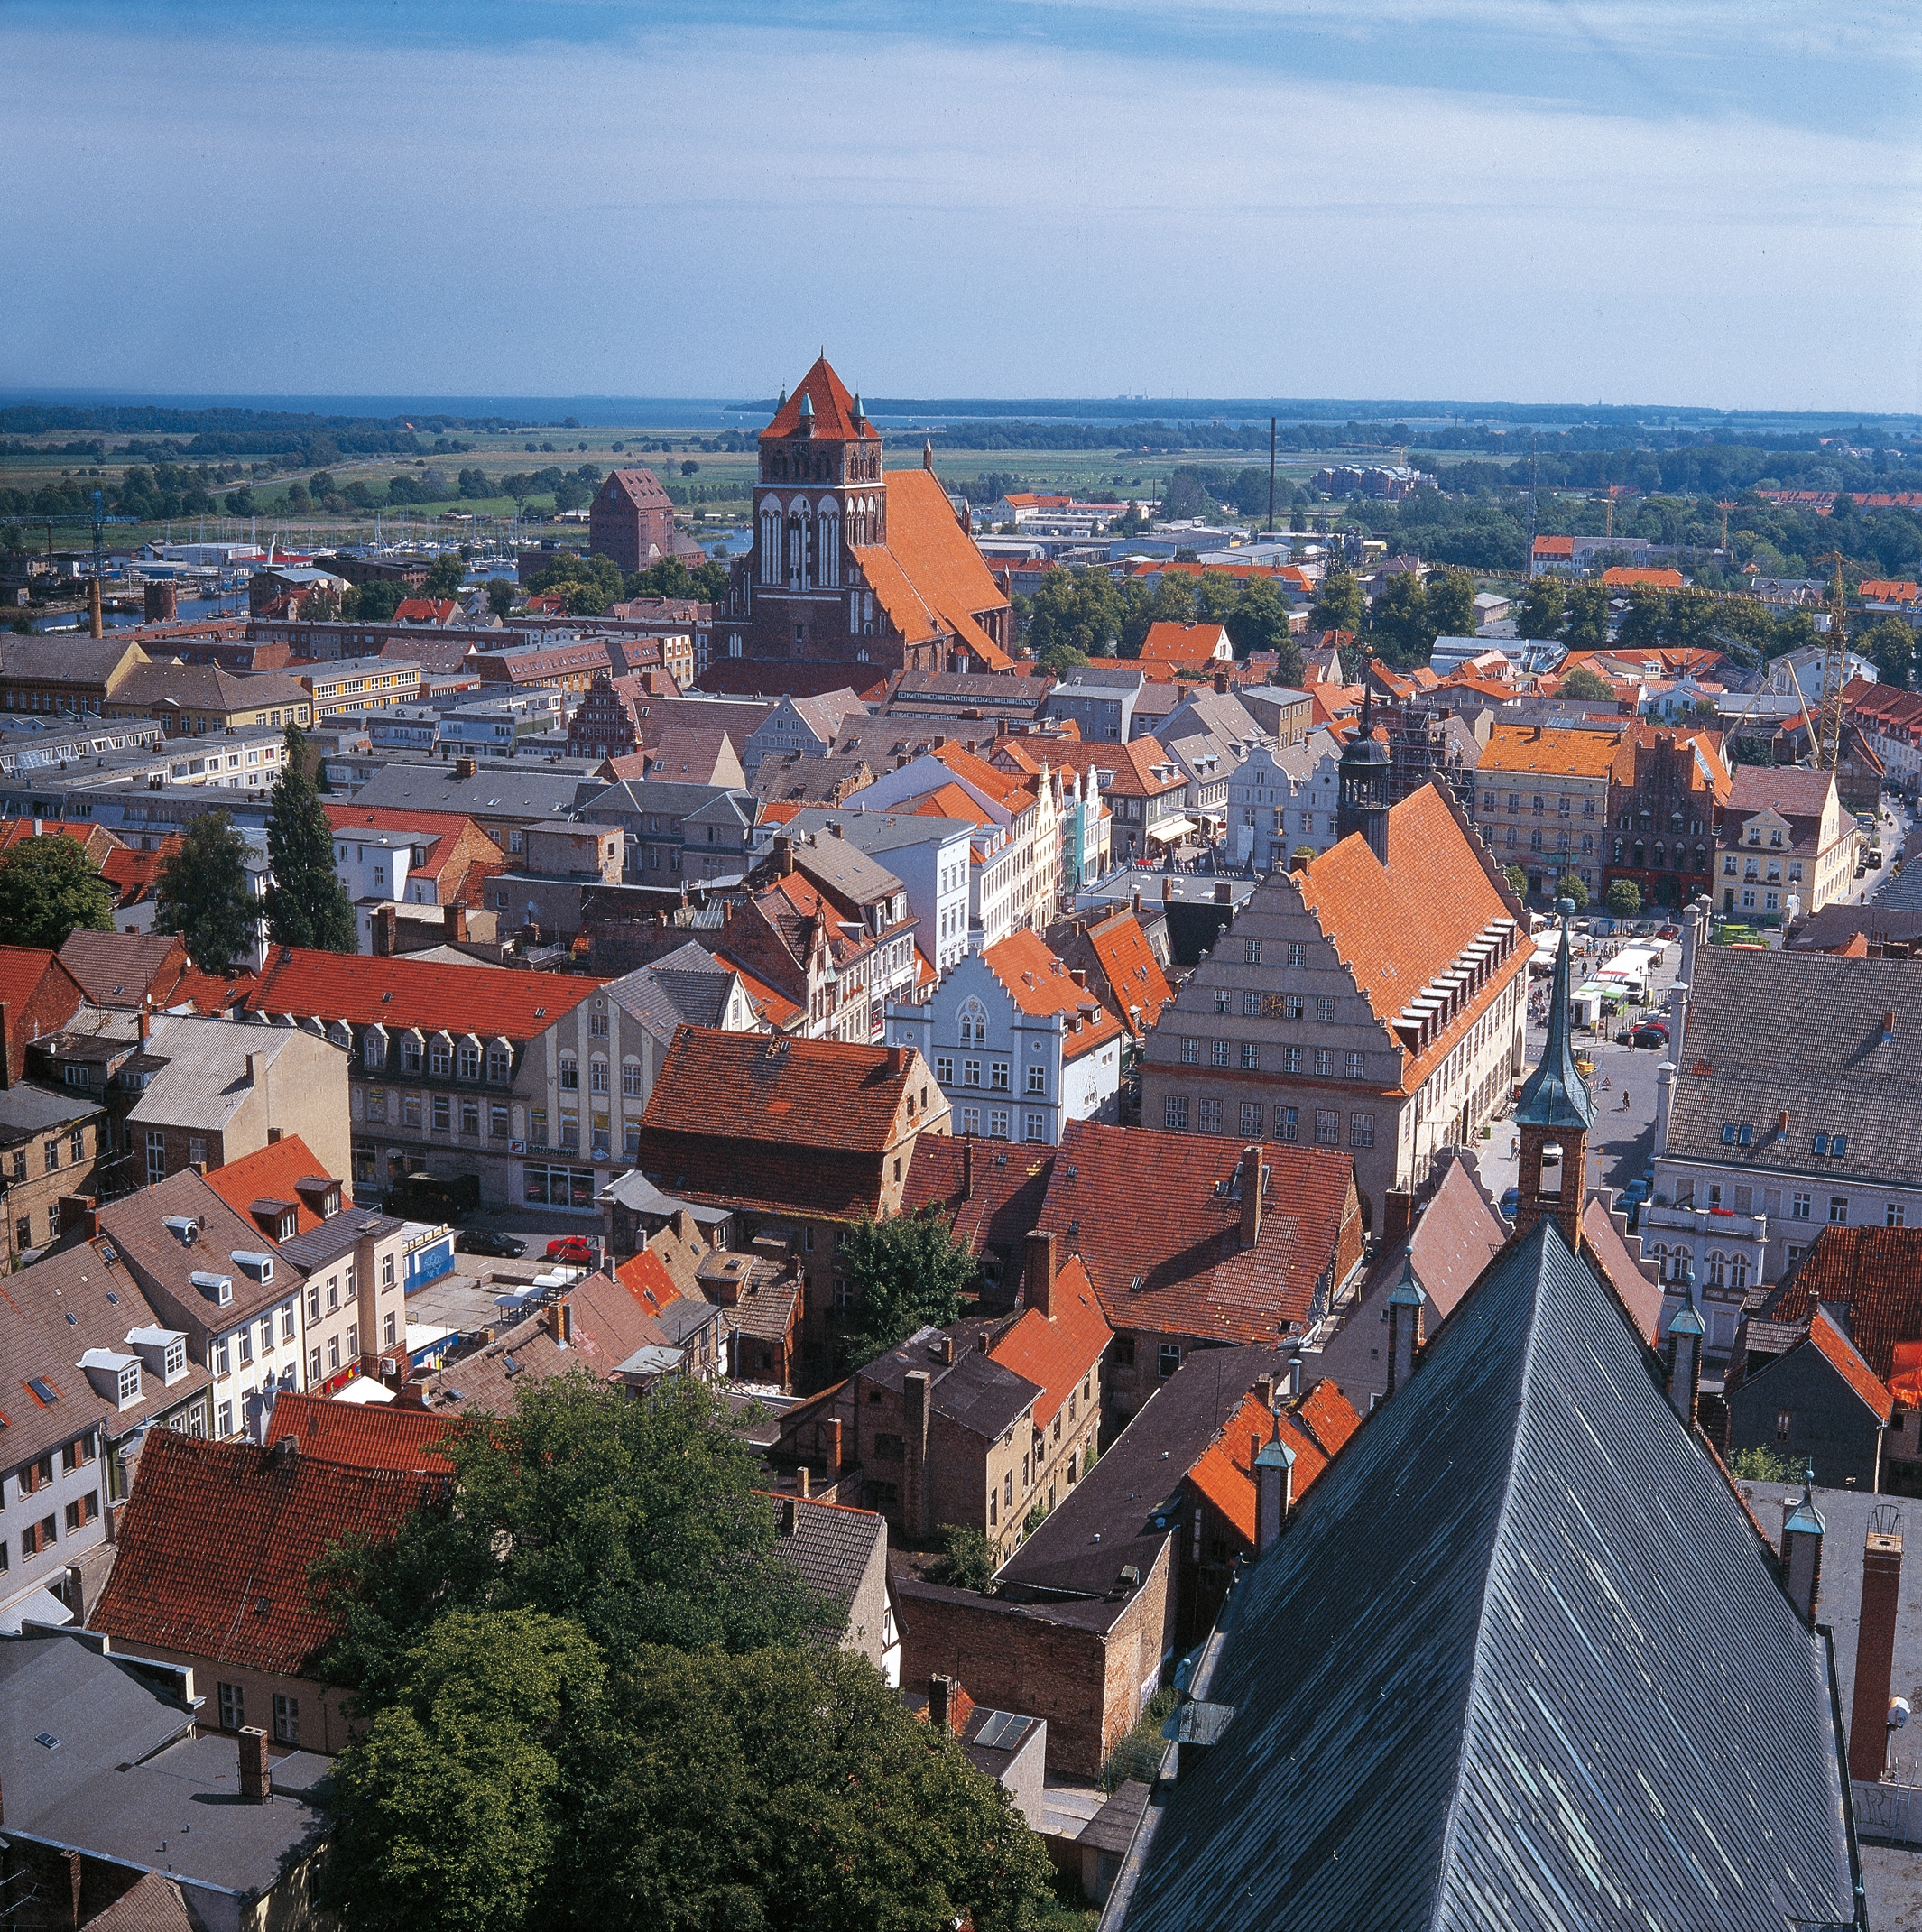 Blick vom Kirchturm auf die Dächer von Greifswald.
